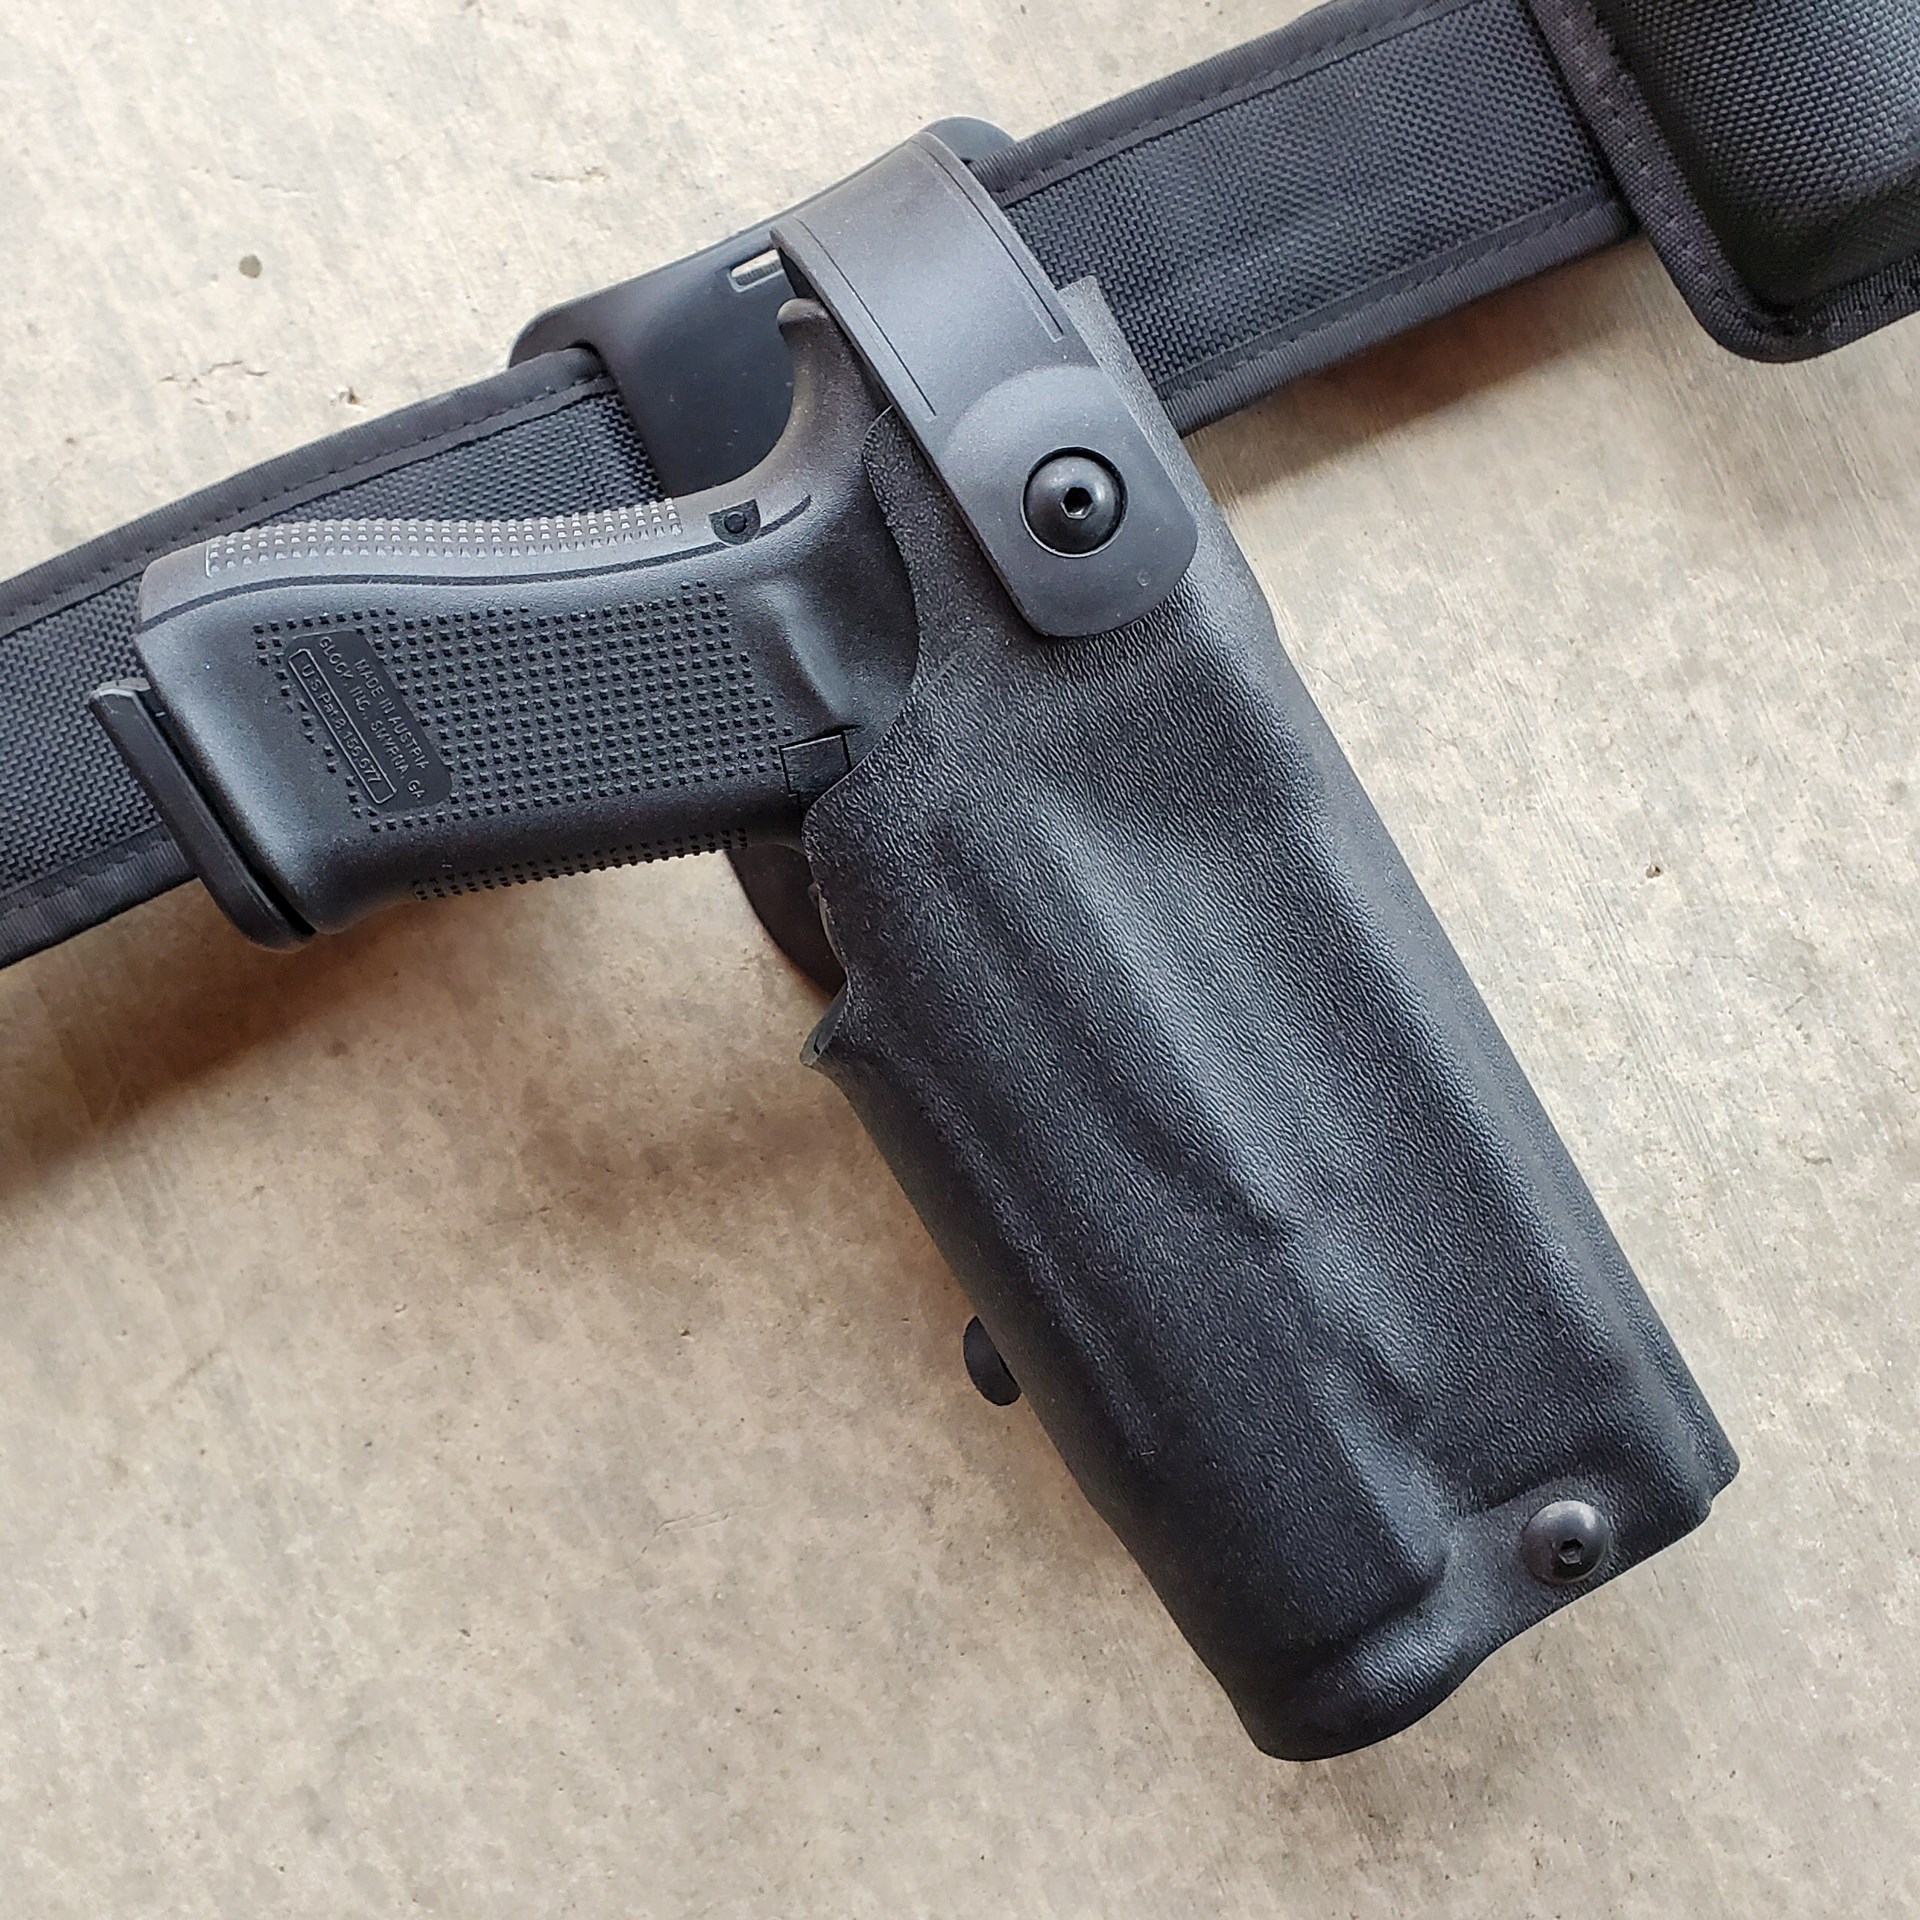 Glock G47 in light-bearing holster belt black plastic gun handgun